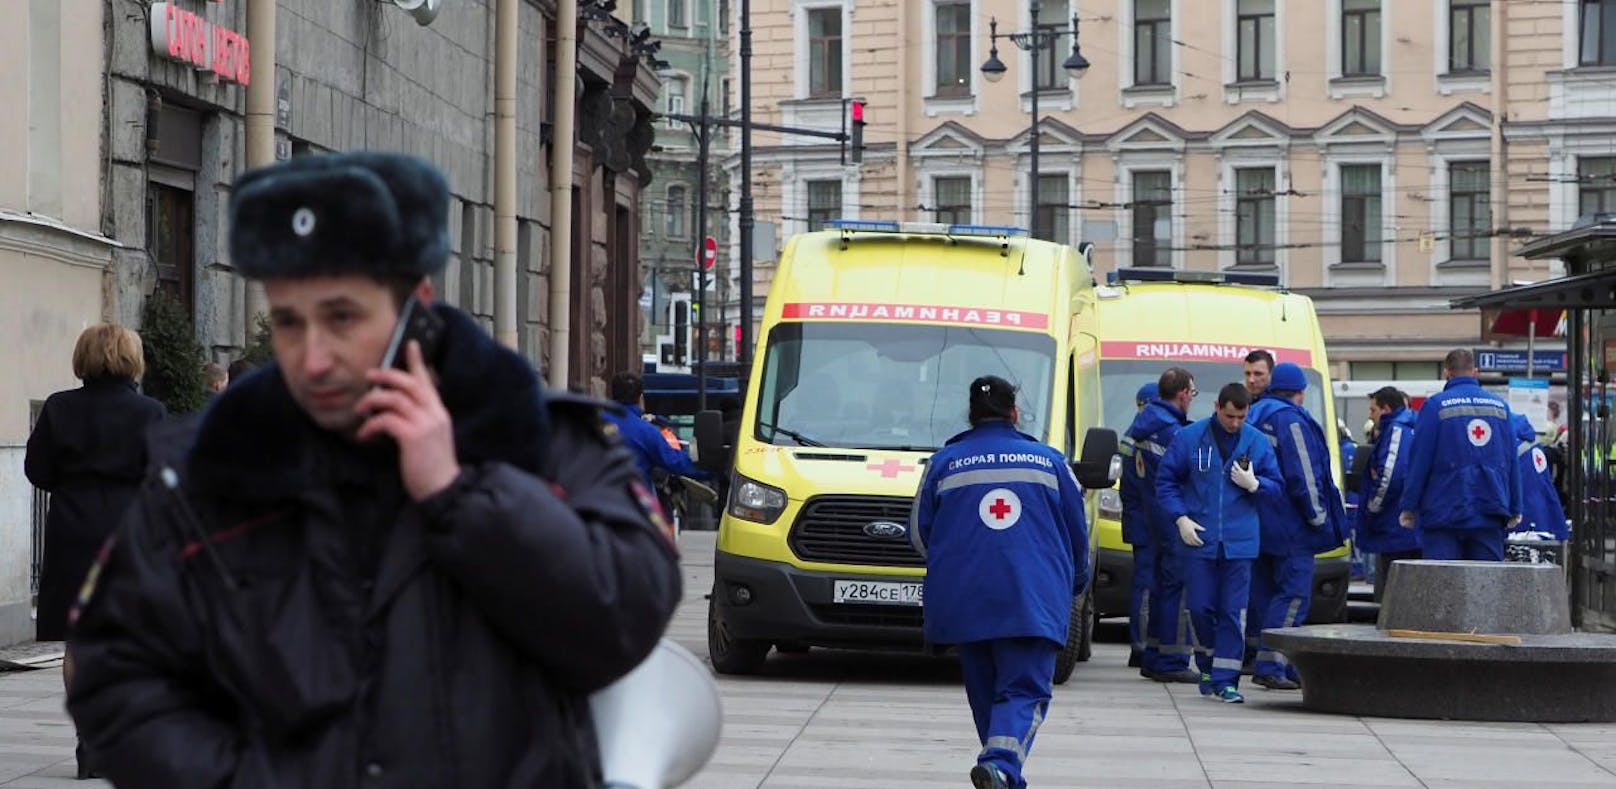 Zwei Personen wurden bei dem Vorfall in St. Petersburg getötet